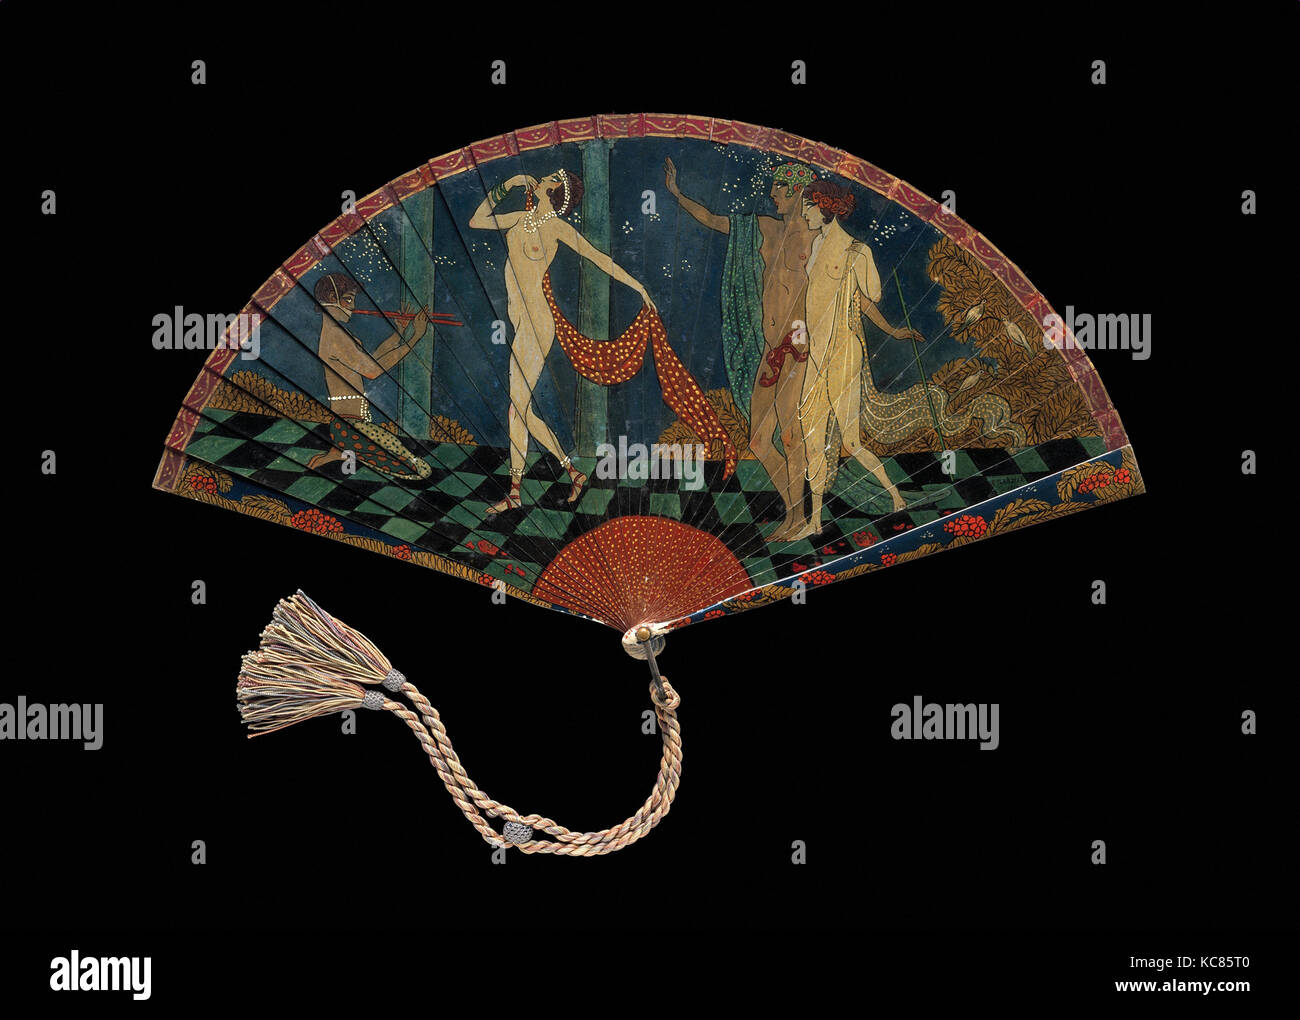 Ventilatore, 1914, dipinto di avorio, metallo, seta, doratura, L. 8-1/2, W. 15-5/8 pollici (21,6 x 39,7 cm.), ventole, Barbier è meglio conosciuto per Foto Stock